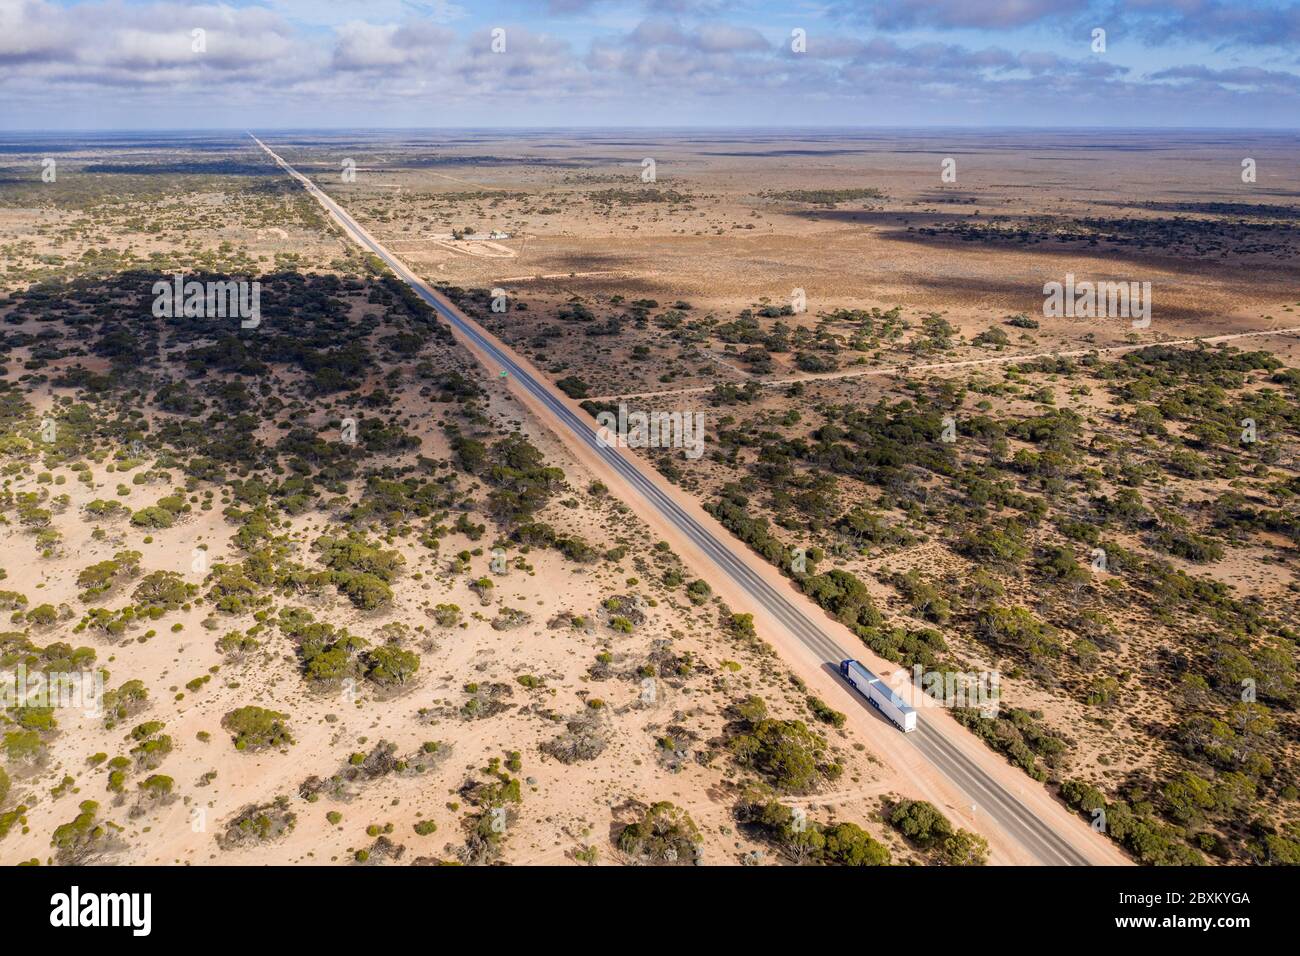 Vista aerea dell'inizio della strada rettilinea di 90 miglia, che è la più lunga strada diritta dell'Australia e si trova sulla pianura di Nullarbor Foto Stock